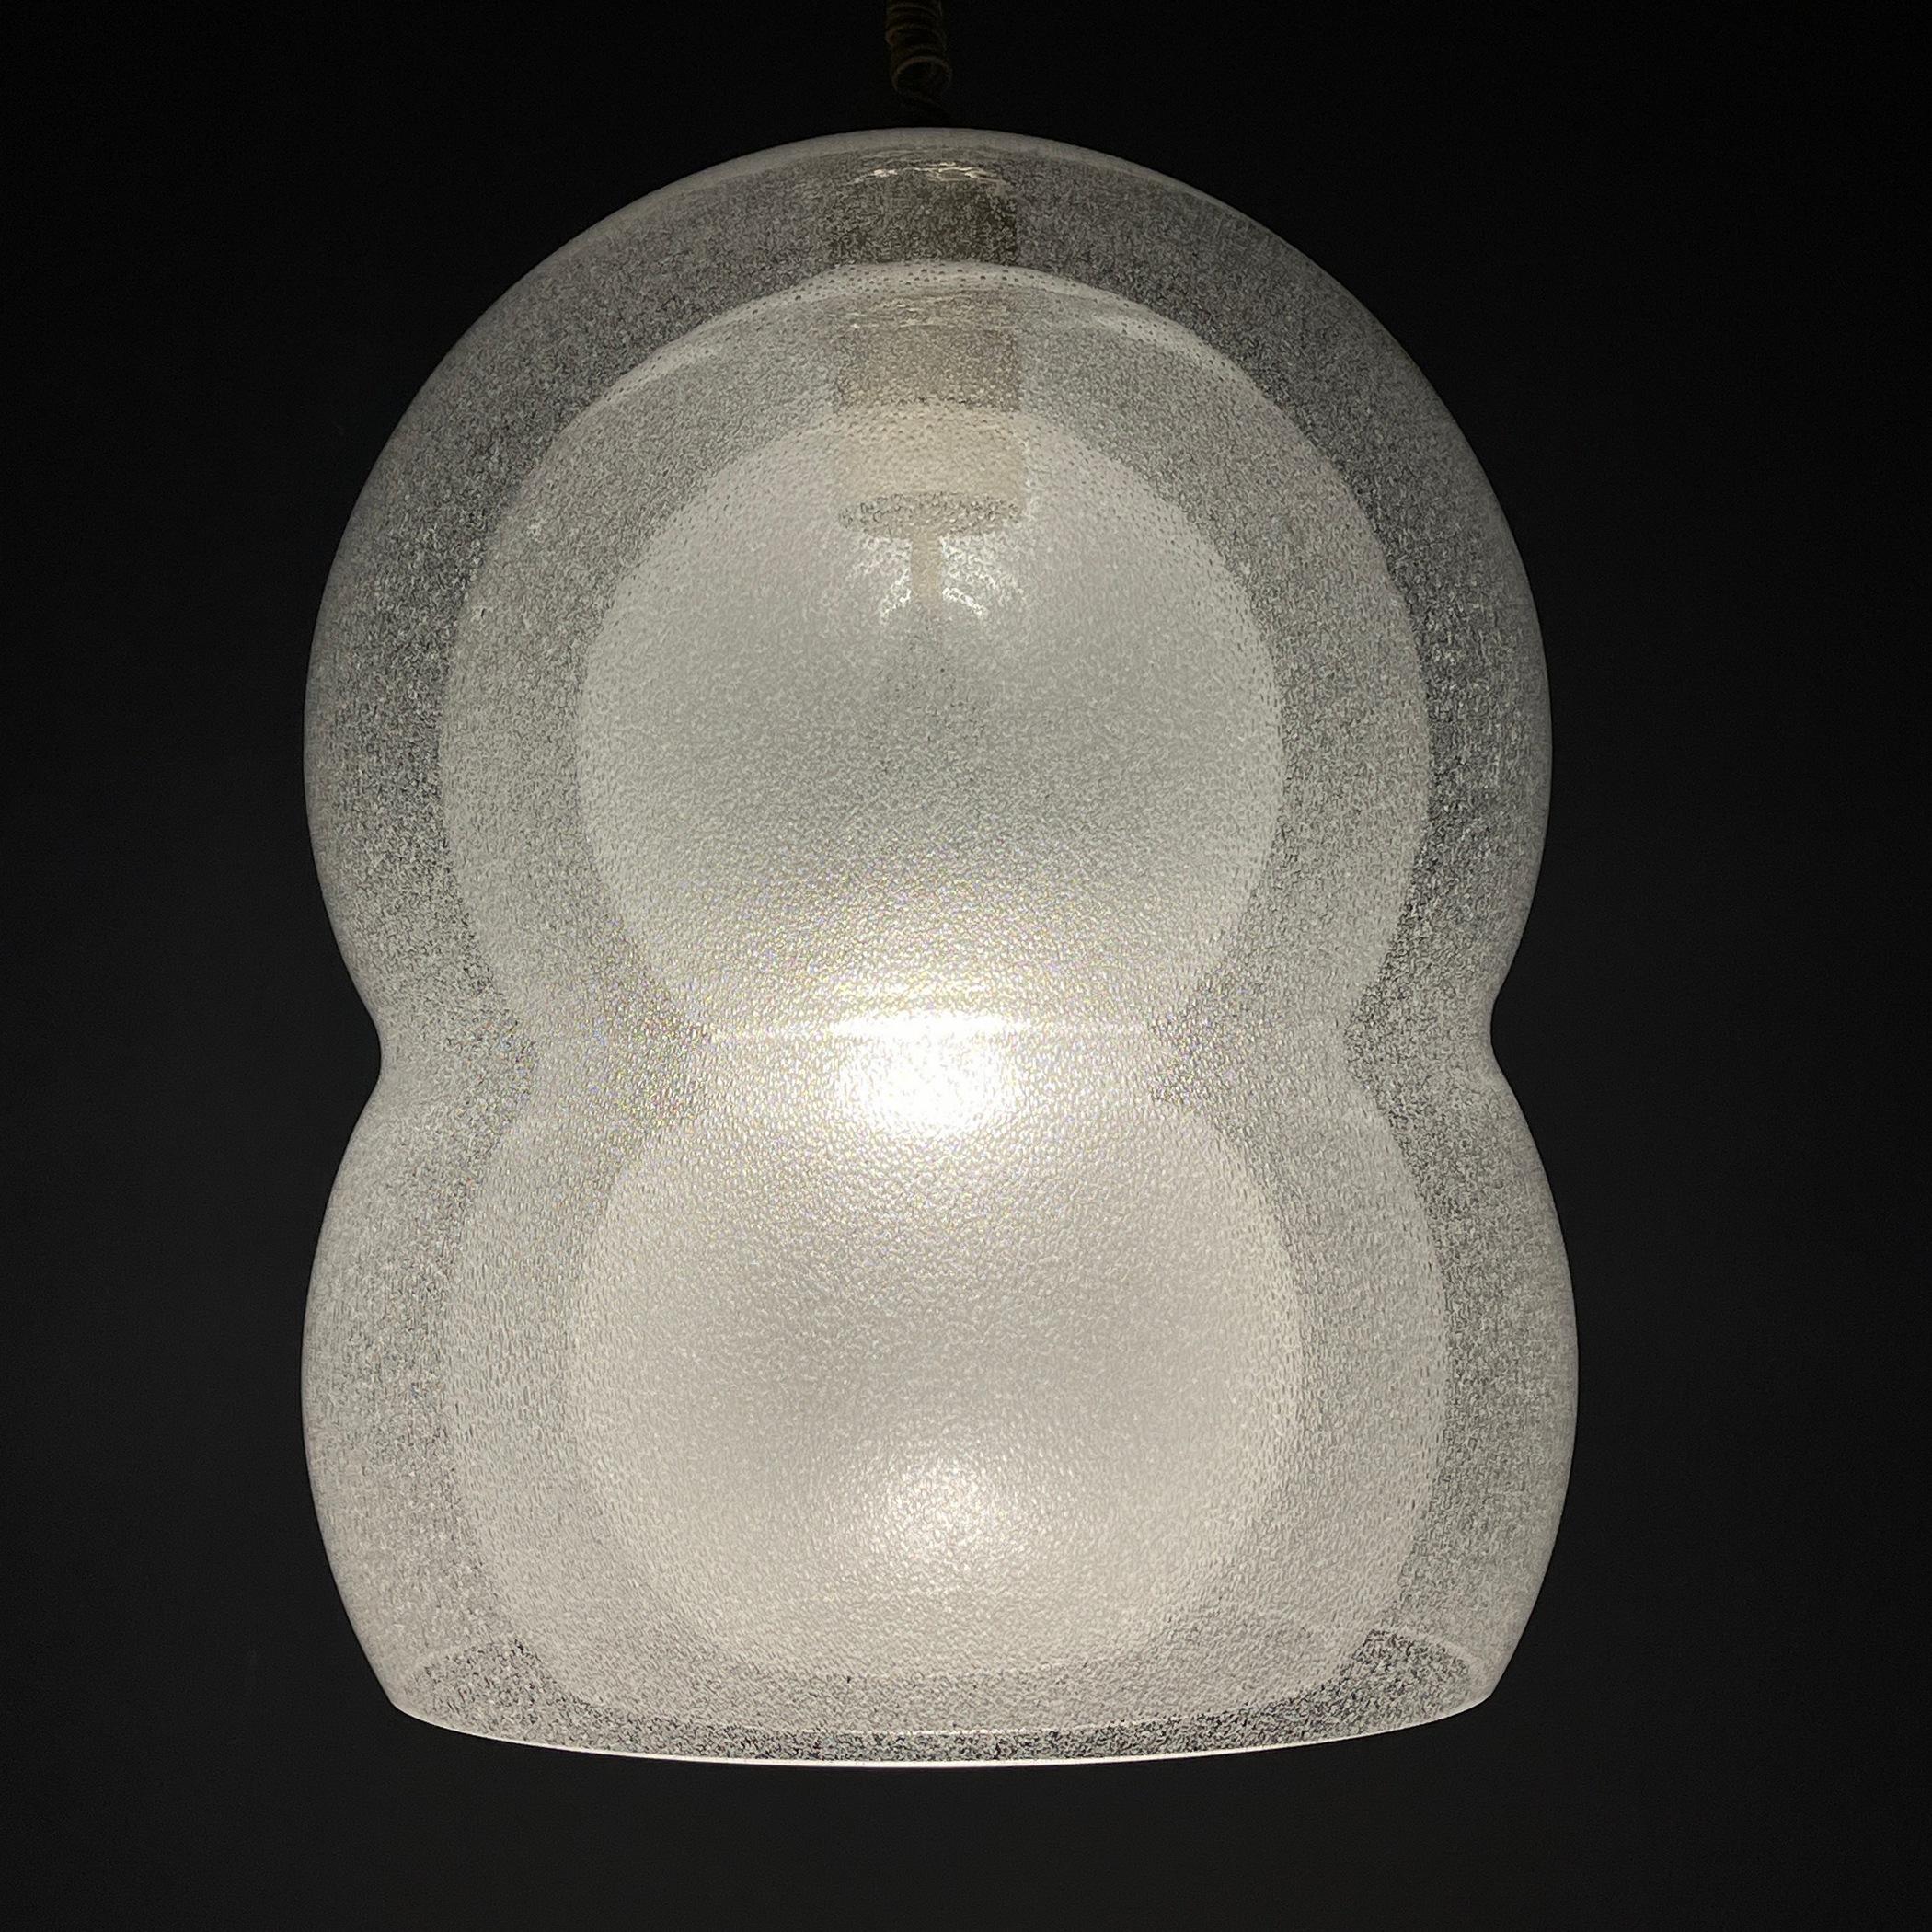 Die Murano-Glaslampe des renommierten italienischen Designers Carlo Nason ist ein unbestreitbar elegantes und außergewöhnliches Kunstwerk. Diese Lampe ist eine echte Rarität, die von Kennern als ein ikonisches Design anerkannt wird, das die